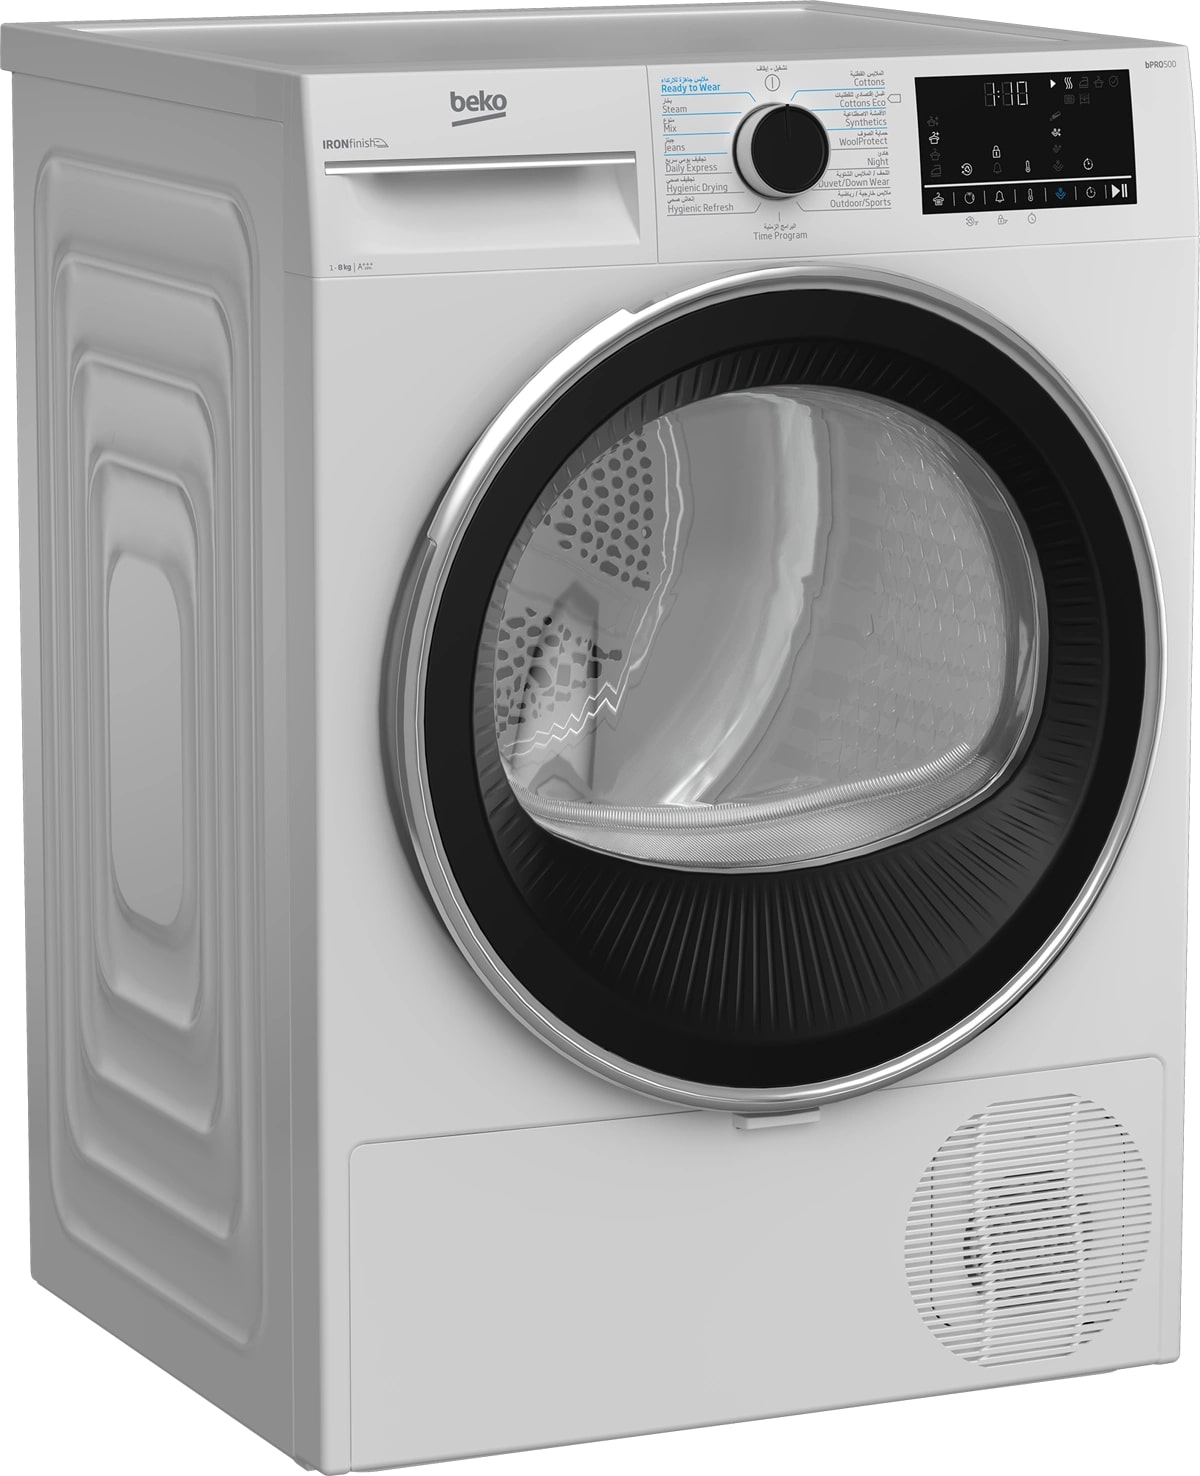 Beko Dryer 8 kg Inverter Heat Pump IronFinish A+++ White